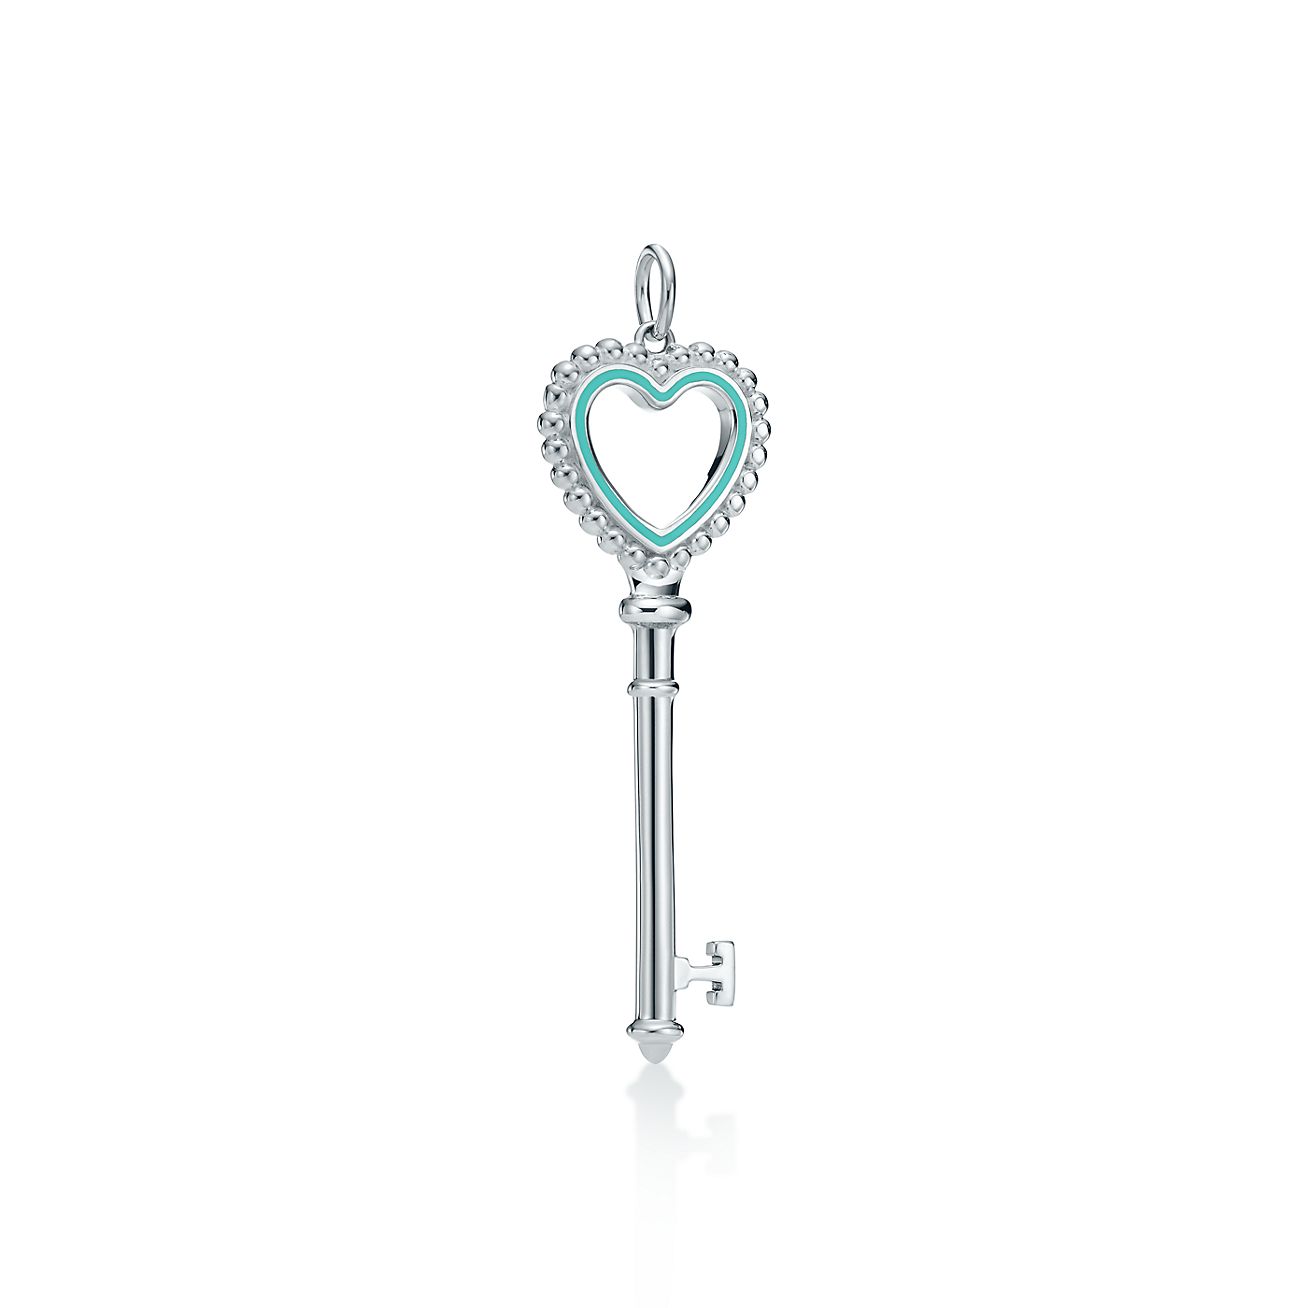 Tiffany Keys Tiffany Blue® Heart Key in 